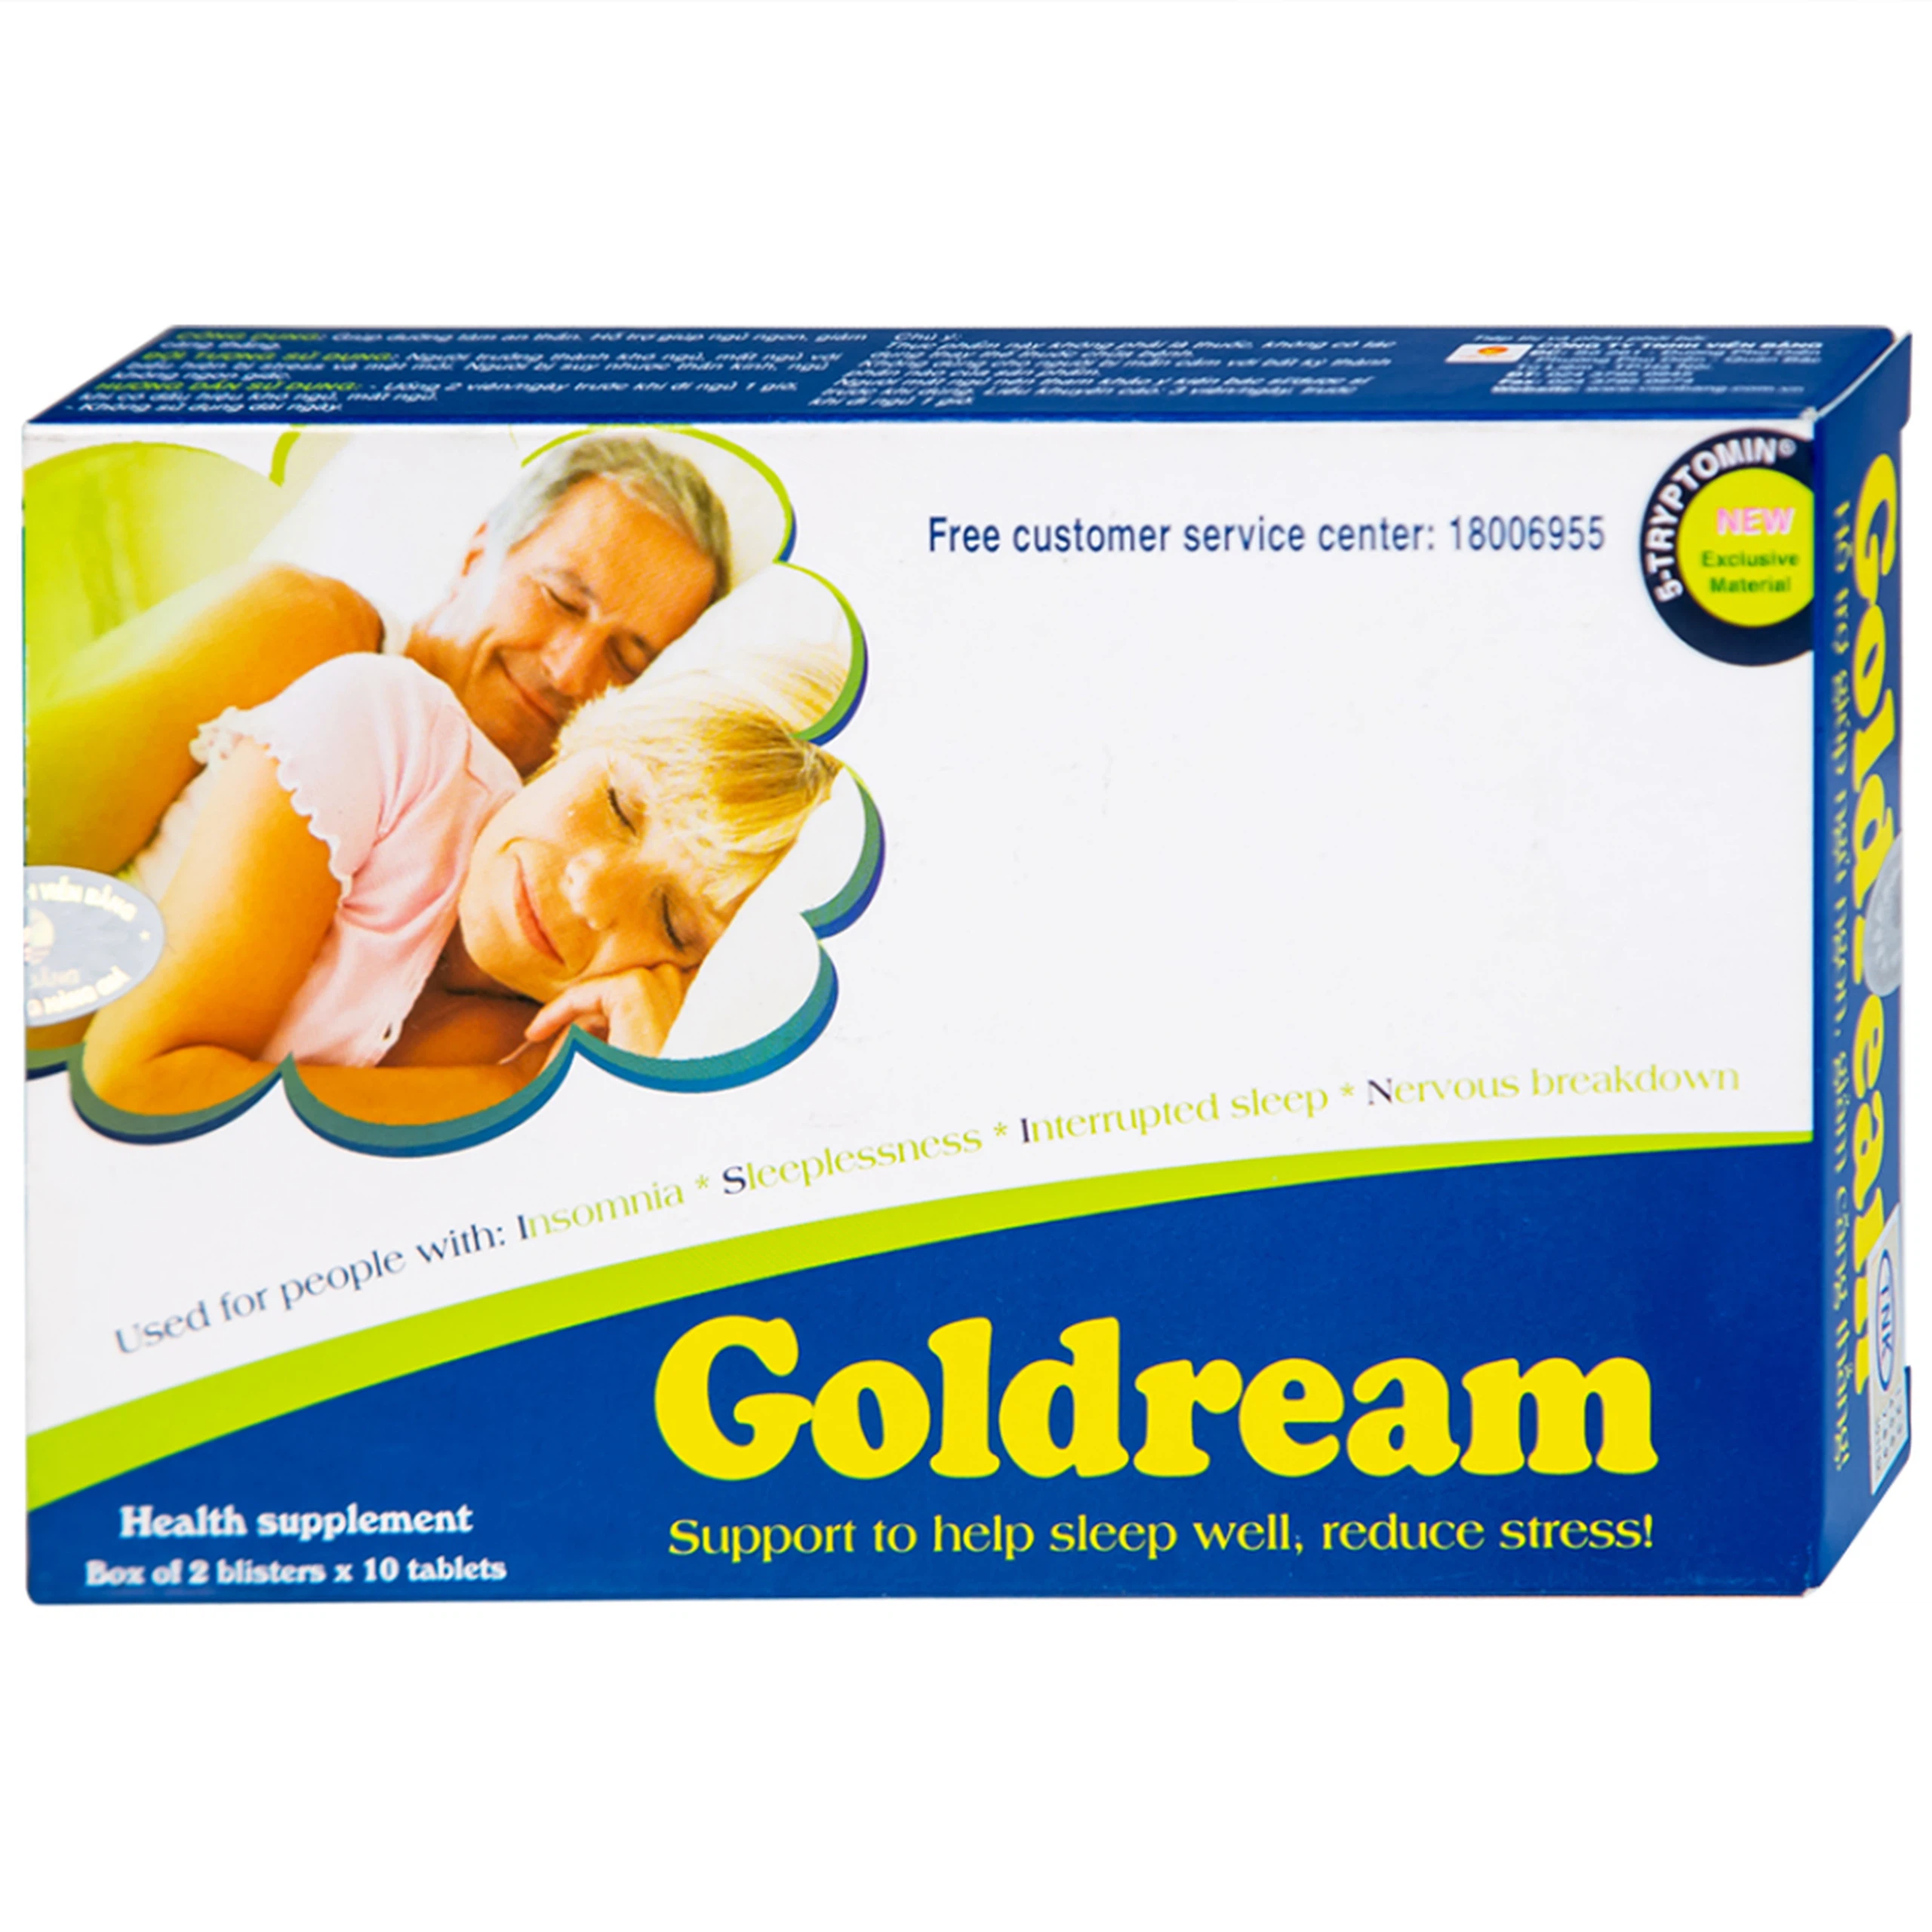 Viên uống Goldream IMC hỗ trợ ngủ ngon, giảm căng thẳng (20 viên)